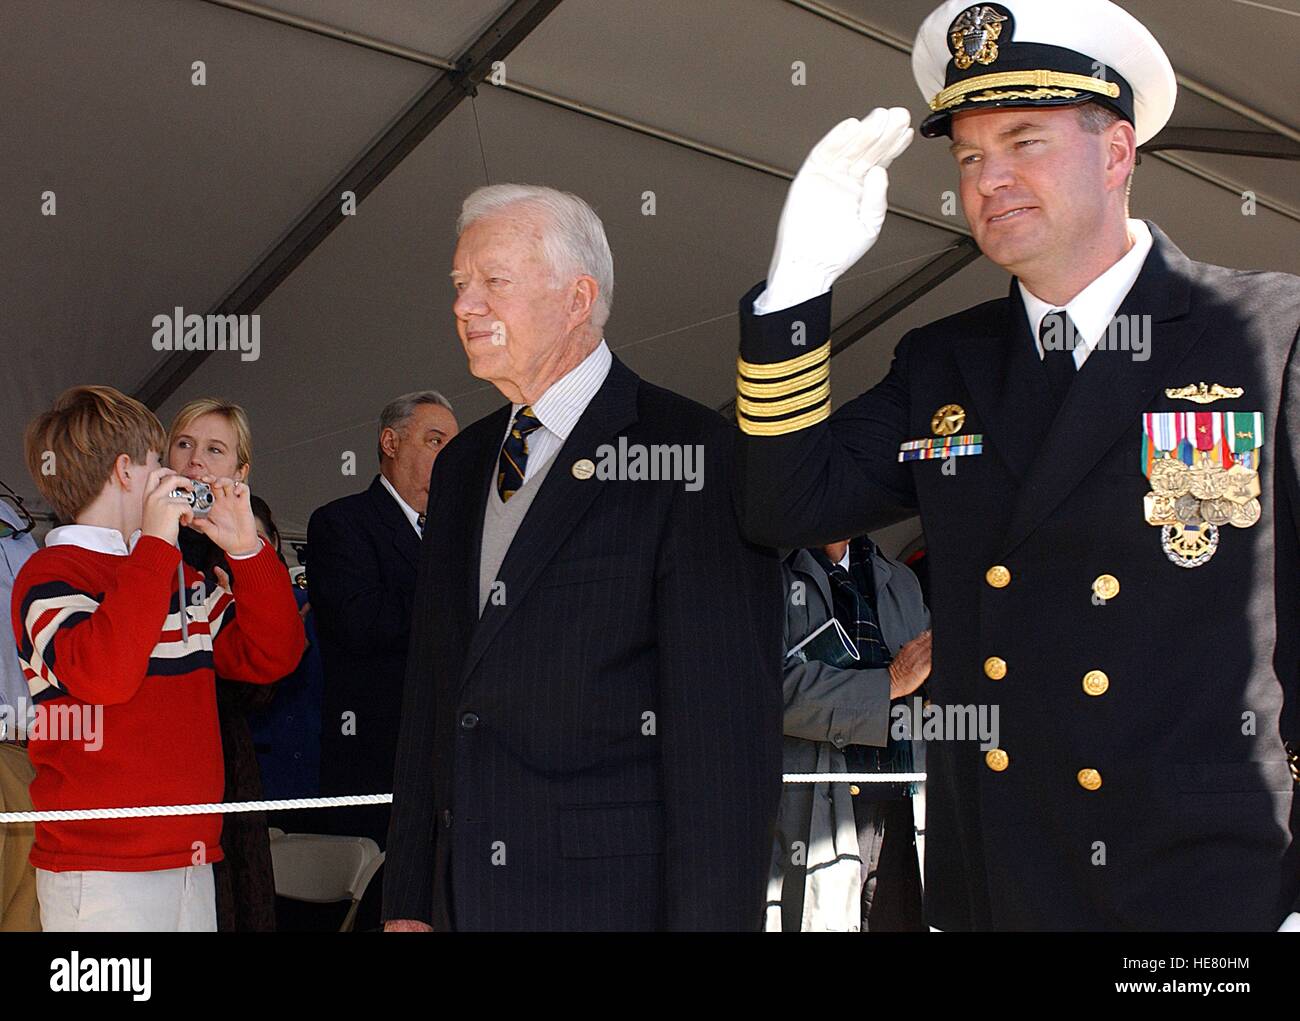 USN Commandant Robert Kelso escorts Jimmy Carter, ancien Président des États-Unis, passé une foule à la cérémonie de mise en service pour la marine américaine de la classe Seawolf-sous-marin d'attaque USS Jimmy Carter à la Naval Submarine Base New London, 19 février 2005 à Groton, Connecticut. Banque D'Images